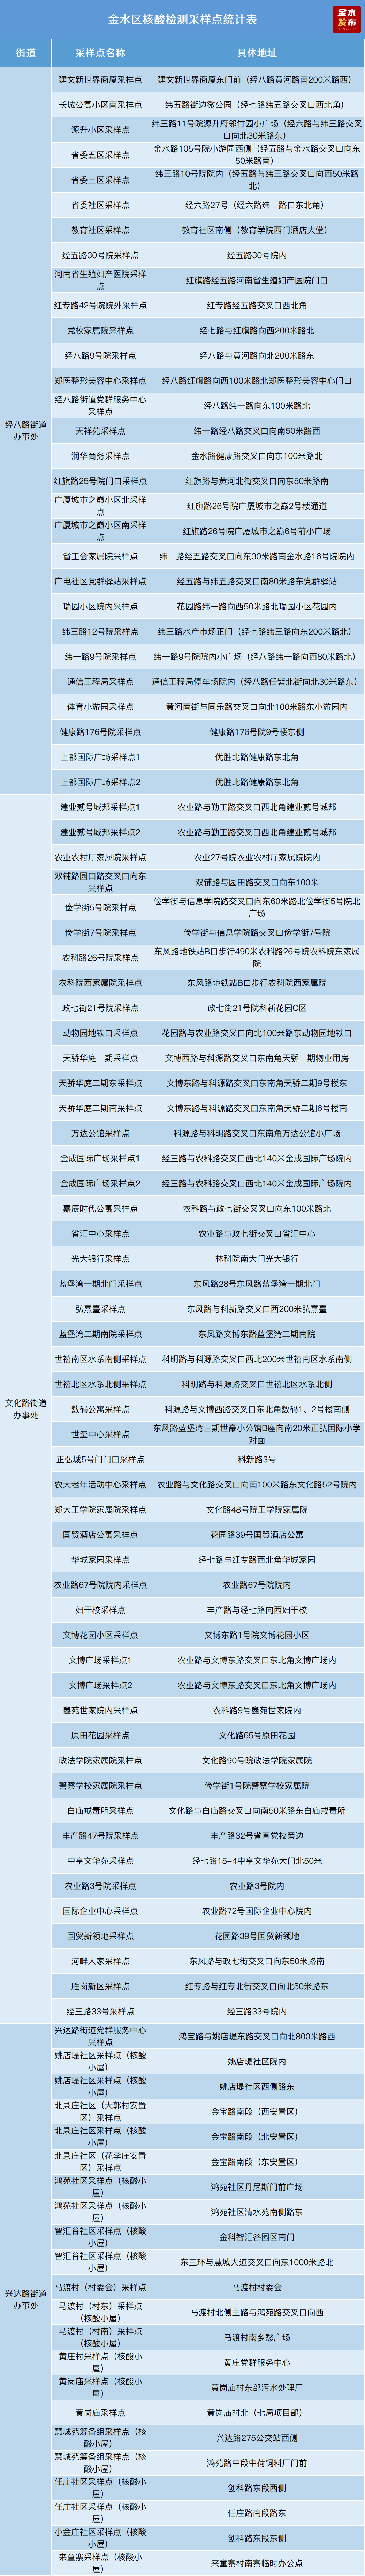 10月9日上午7点开始 郑州金水区开展全区新冠病毒核酸筛查！